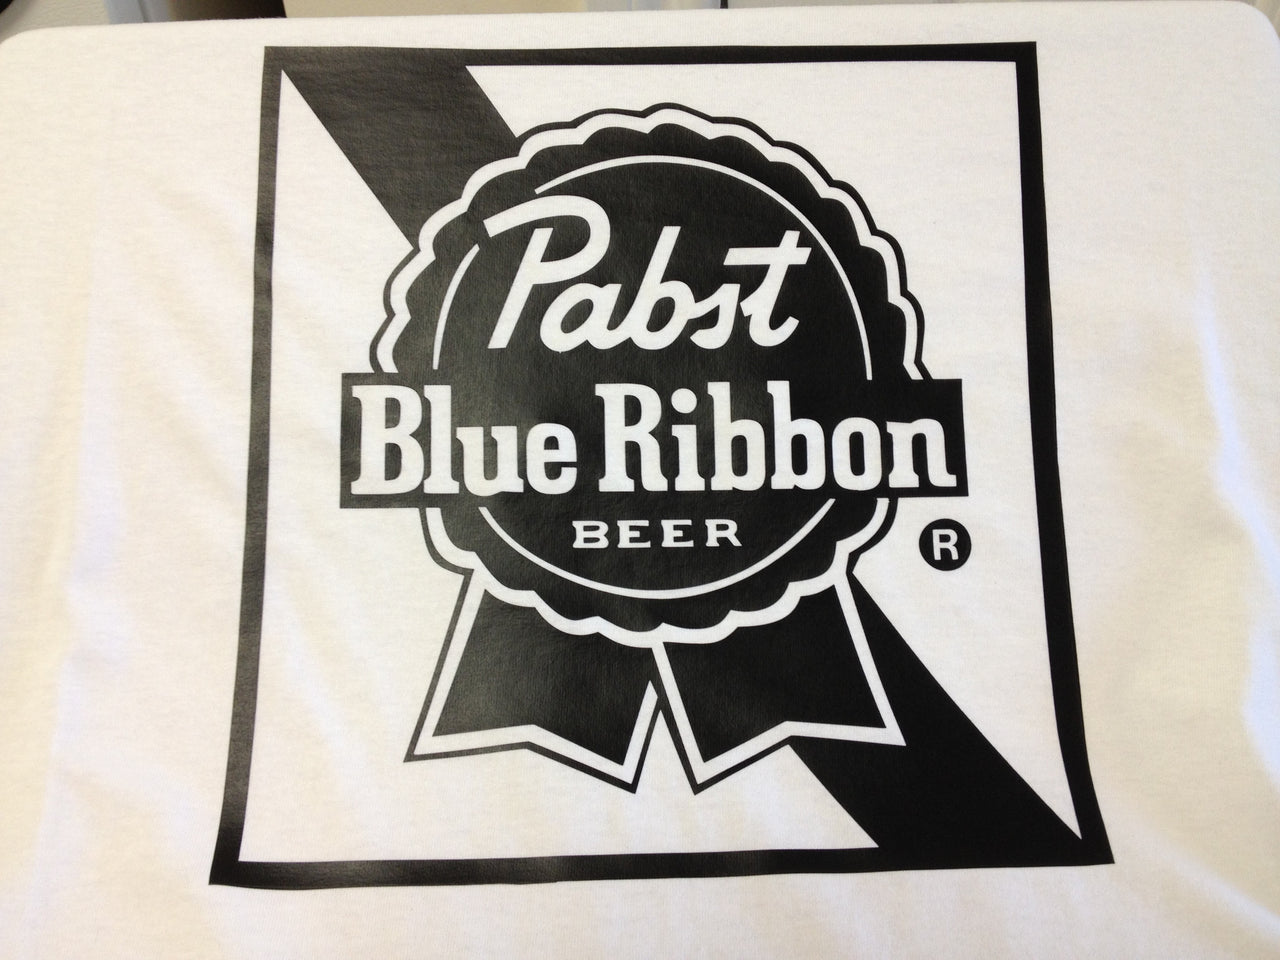 Pabst Blue Ribbon Beer Tshirt - TshirtNow.net - 2